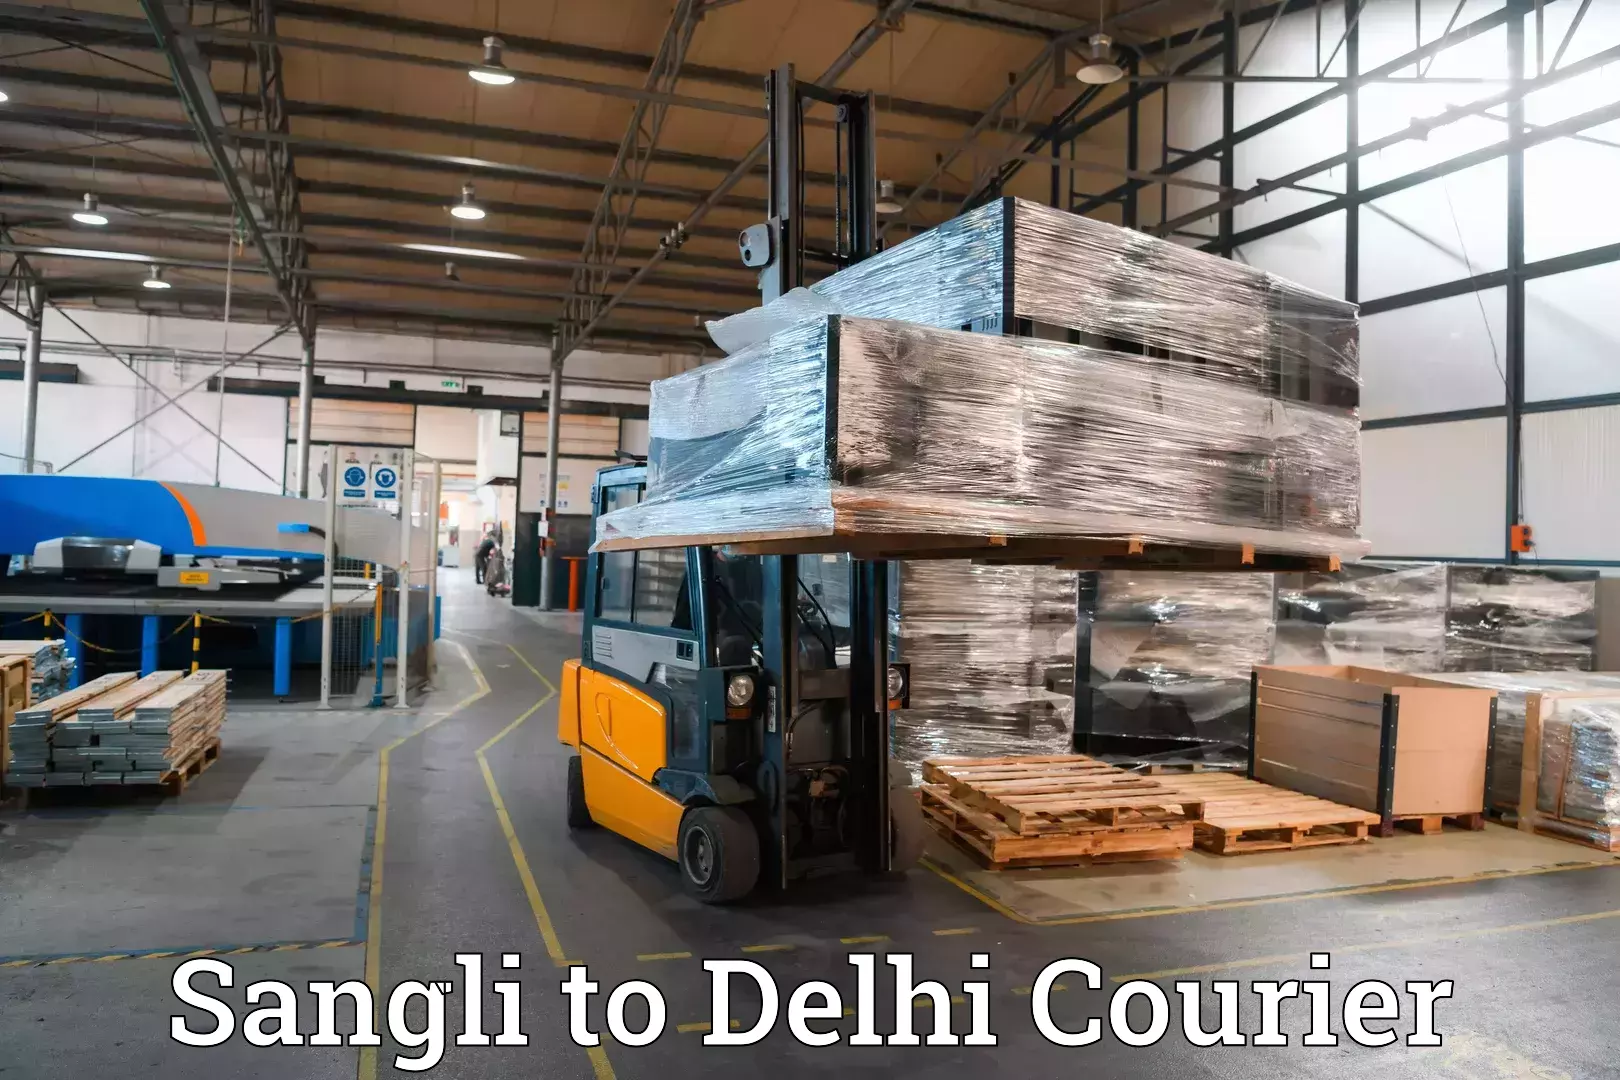 Customized luggage delivery Sangli to Jamia Millia Islamia New Delhi